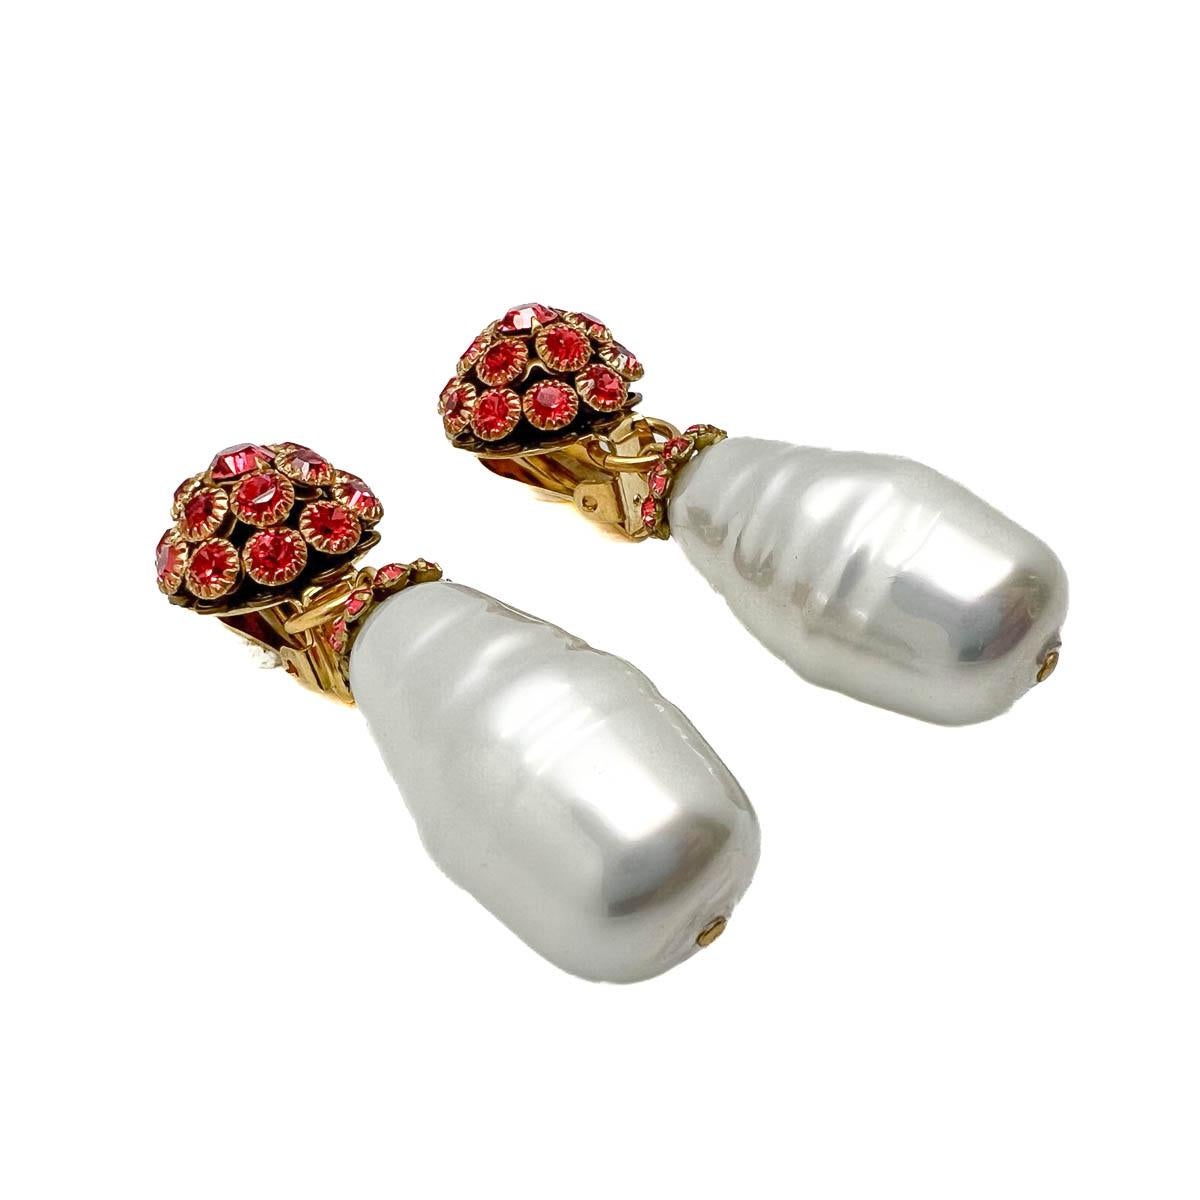 Ein Paar Vintage Barock Perle & Lachsrosa Kristall Ohrringe. Die Kristalle funkeln in einem intensiven Lachsrosa, und eine große Barockperle rundet den Ohrring ab und verleiht ihm eine ganz besondere Note. Zart und doch imposant, eine gelungene